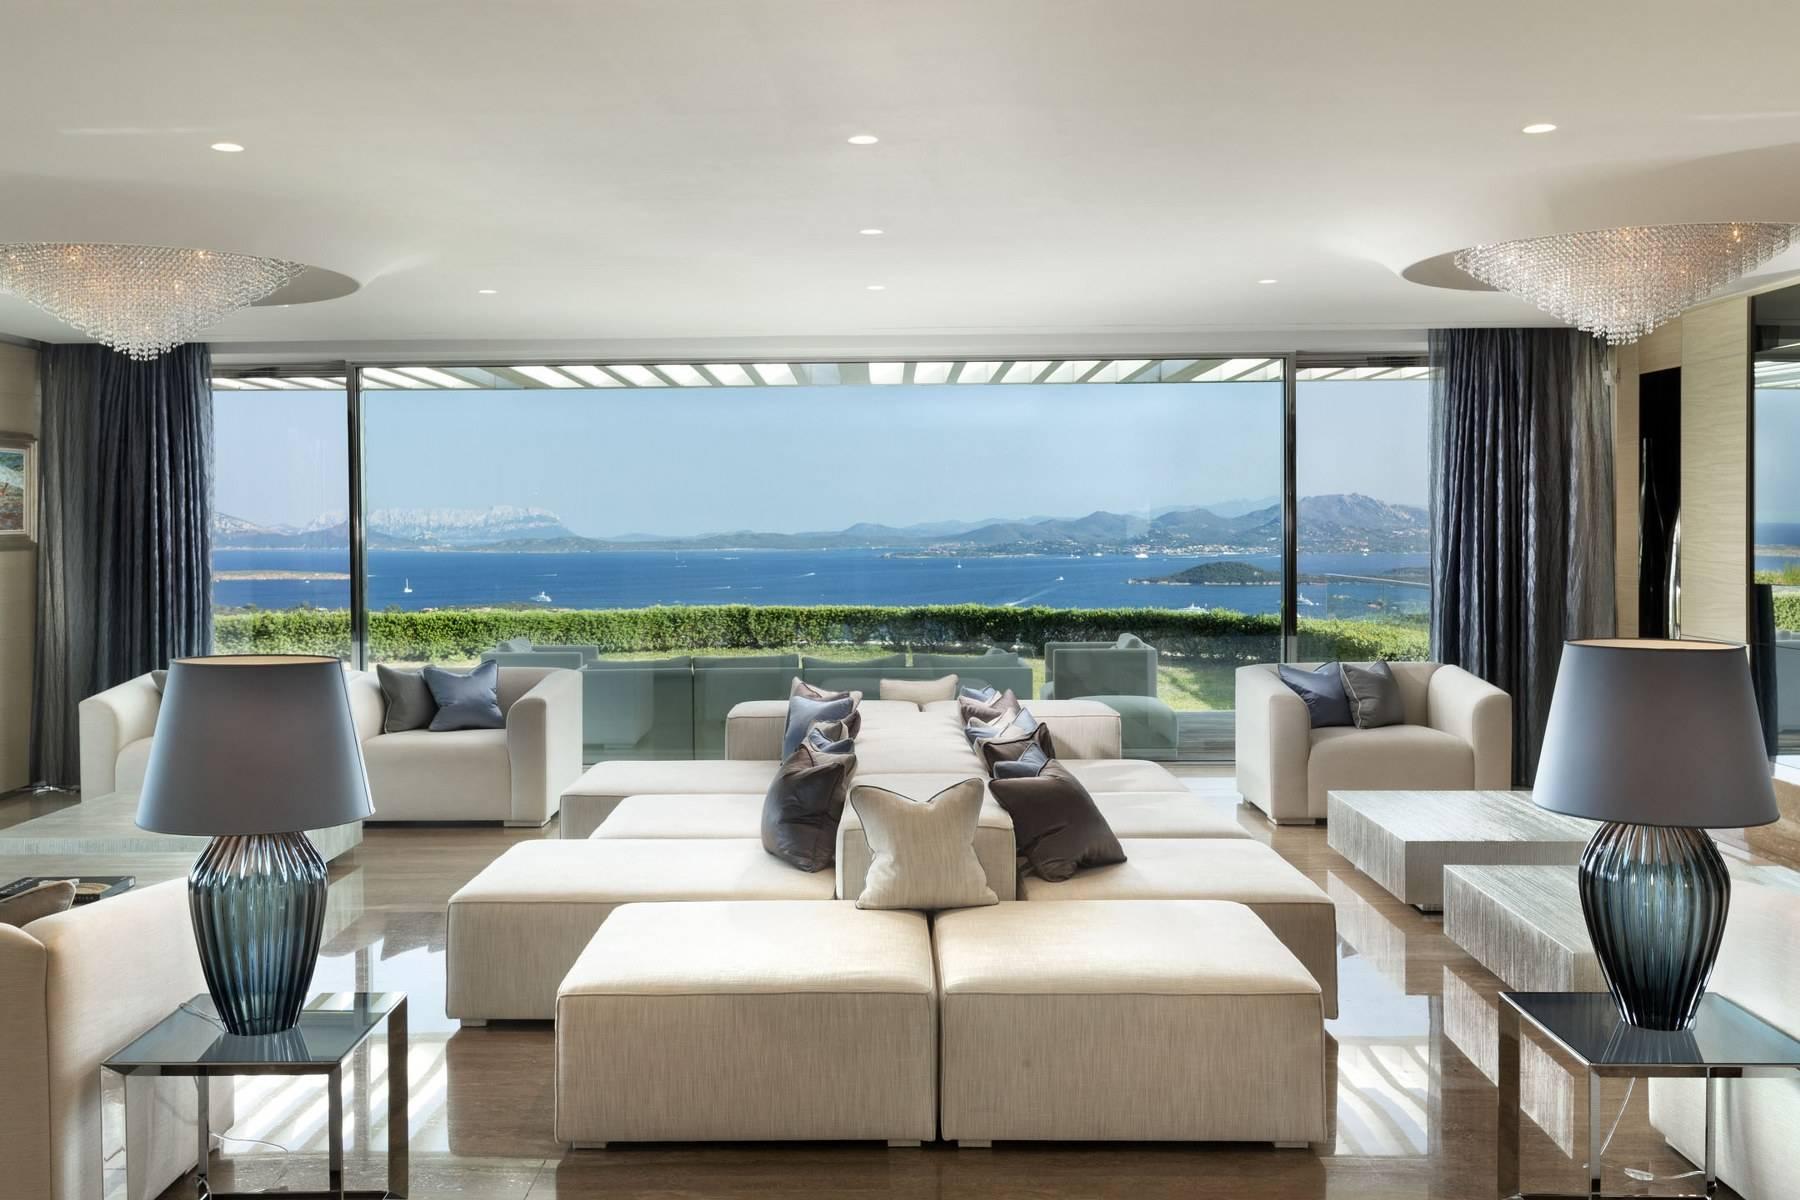 Glamour - Prestigious and elegant villa located in the heart of the Costa Smeralda - 2